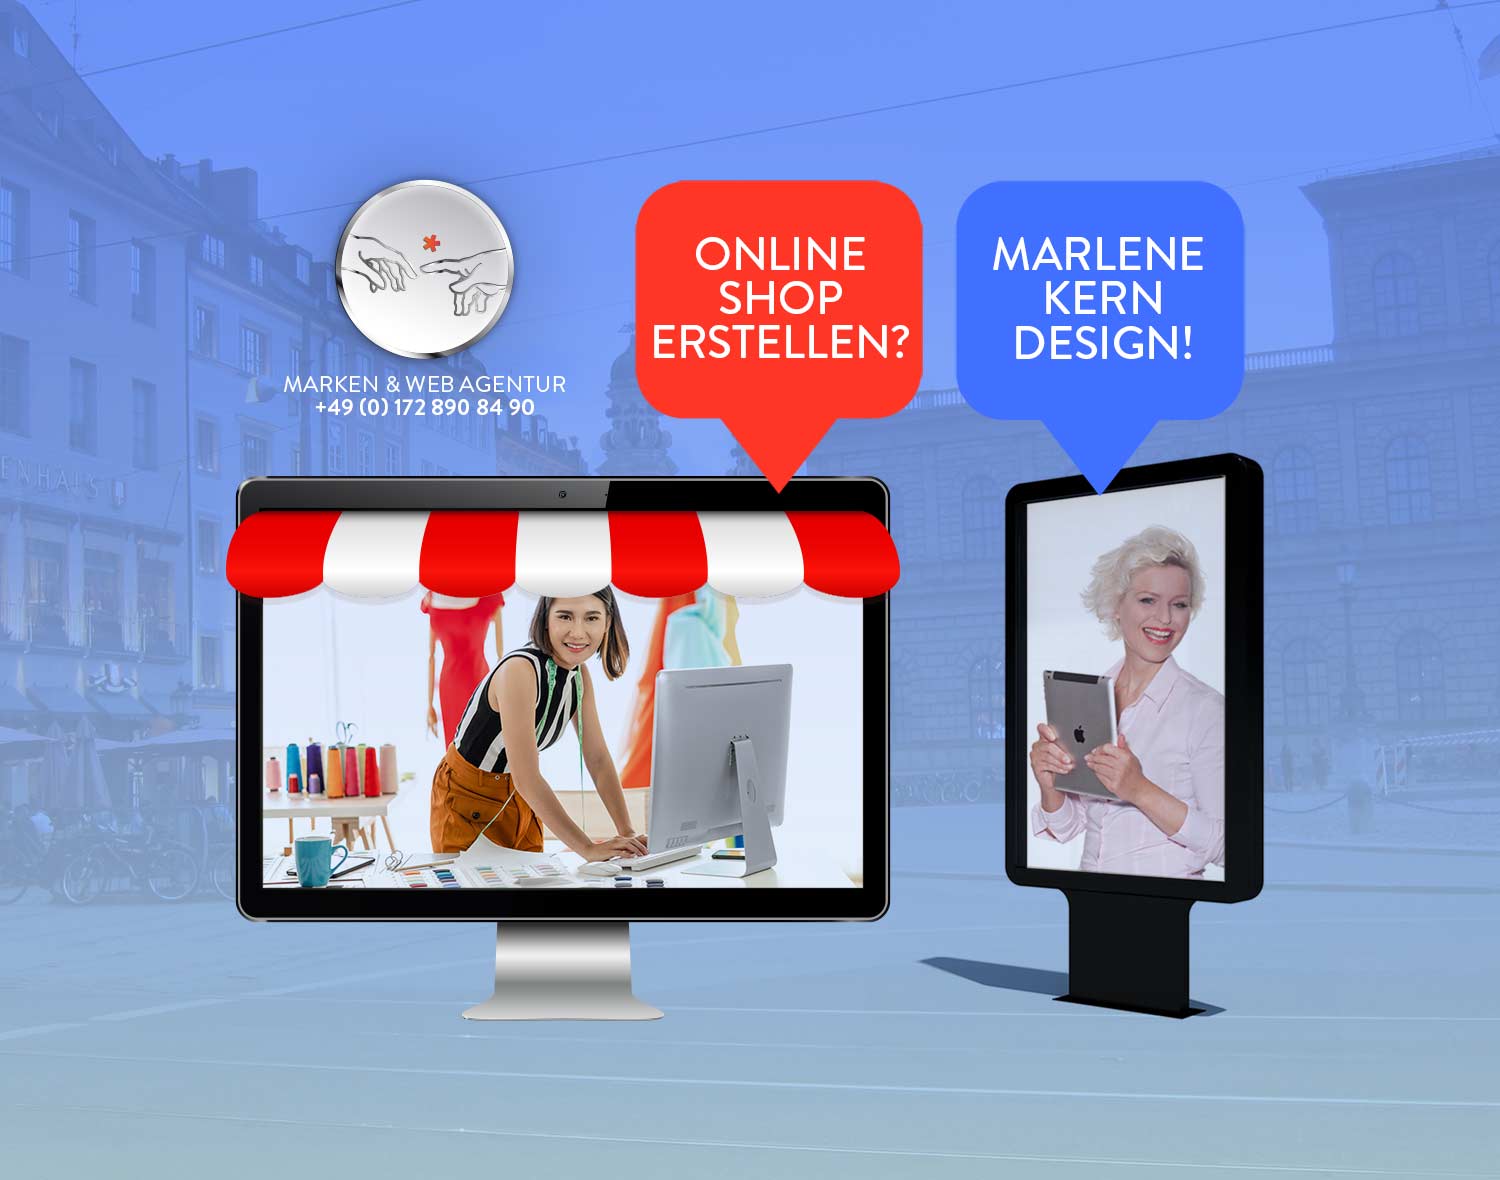 Online Shop erstellen – Marken & Web Agentur München erstellt Ihren Onlineshop. Marlene Kern Design bietet Ihnen nachhaltige Qualität & professionellen Prozess.